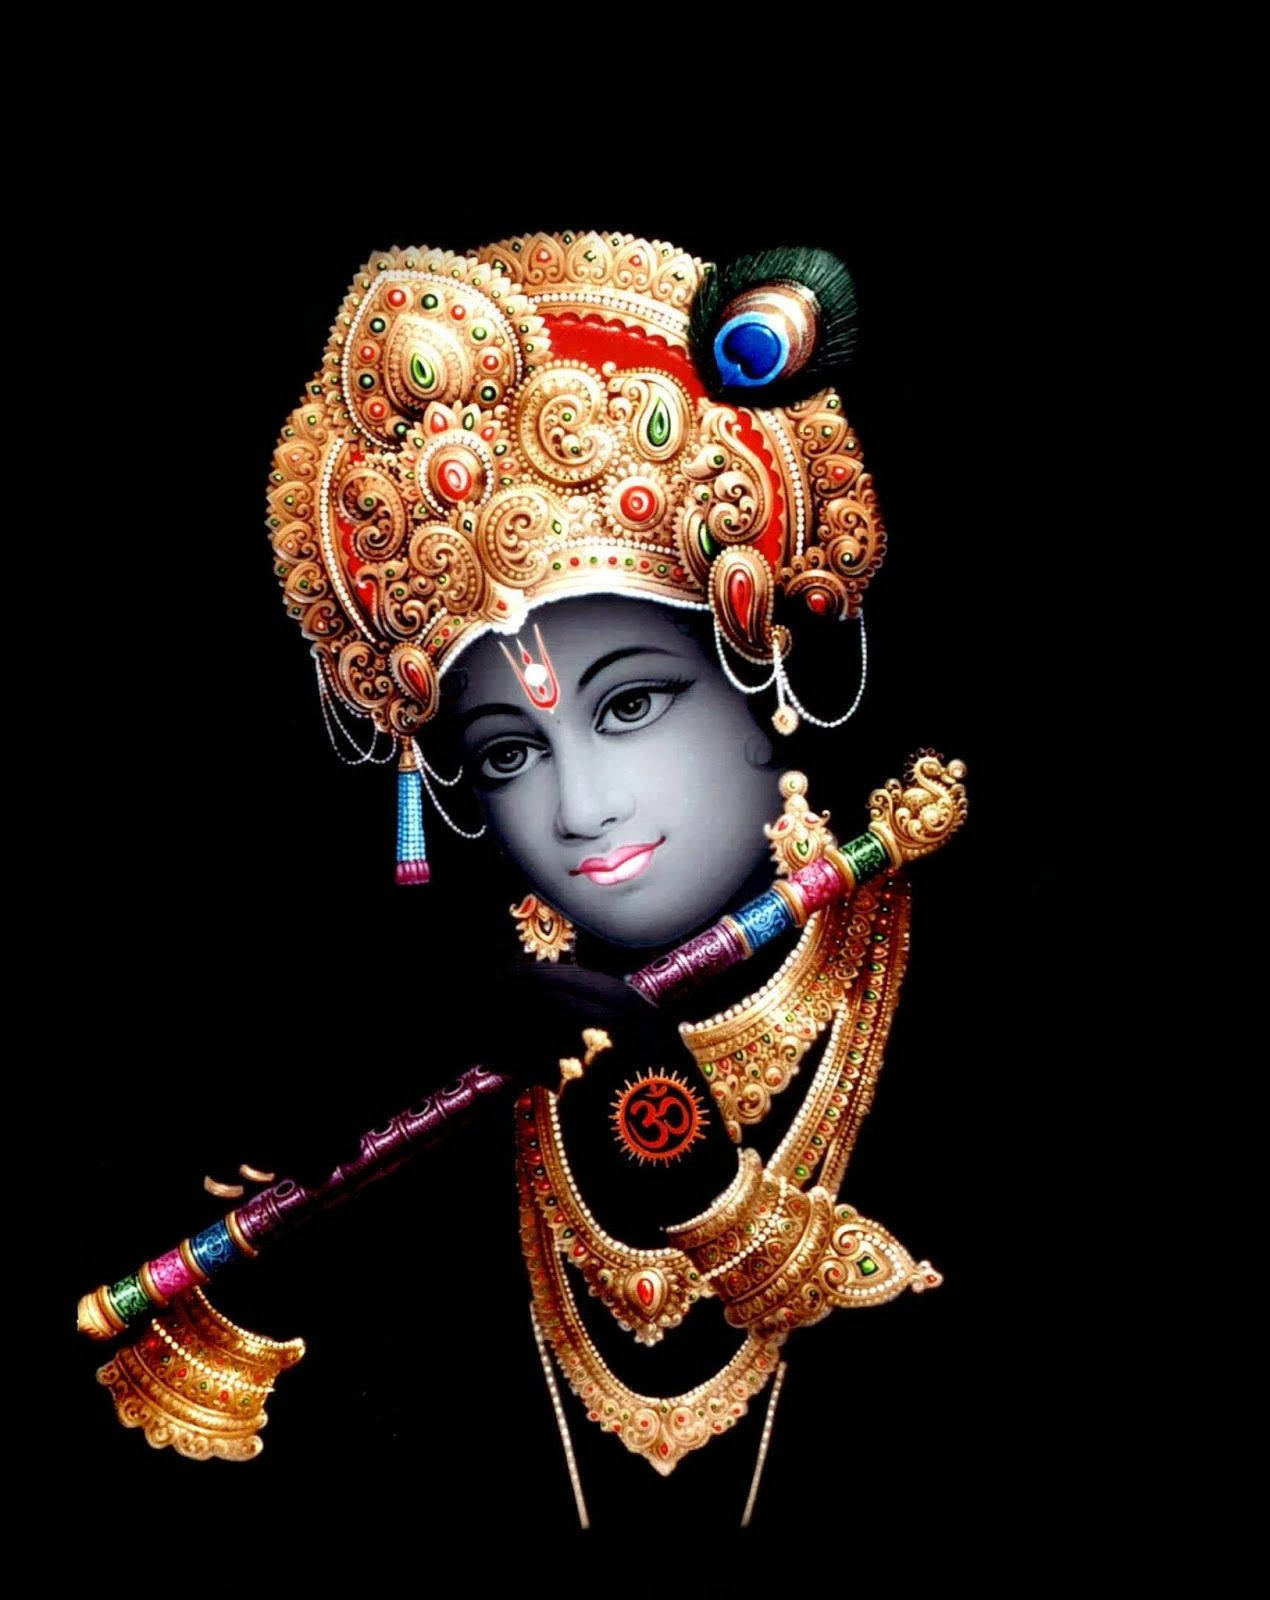 God Mobile Krishna Wallpaper